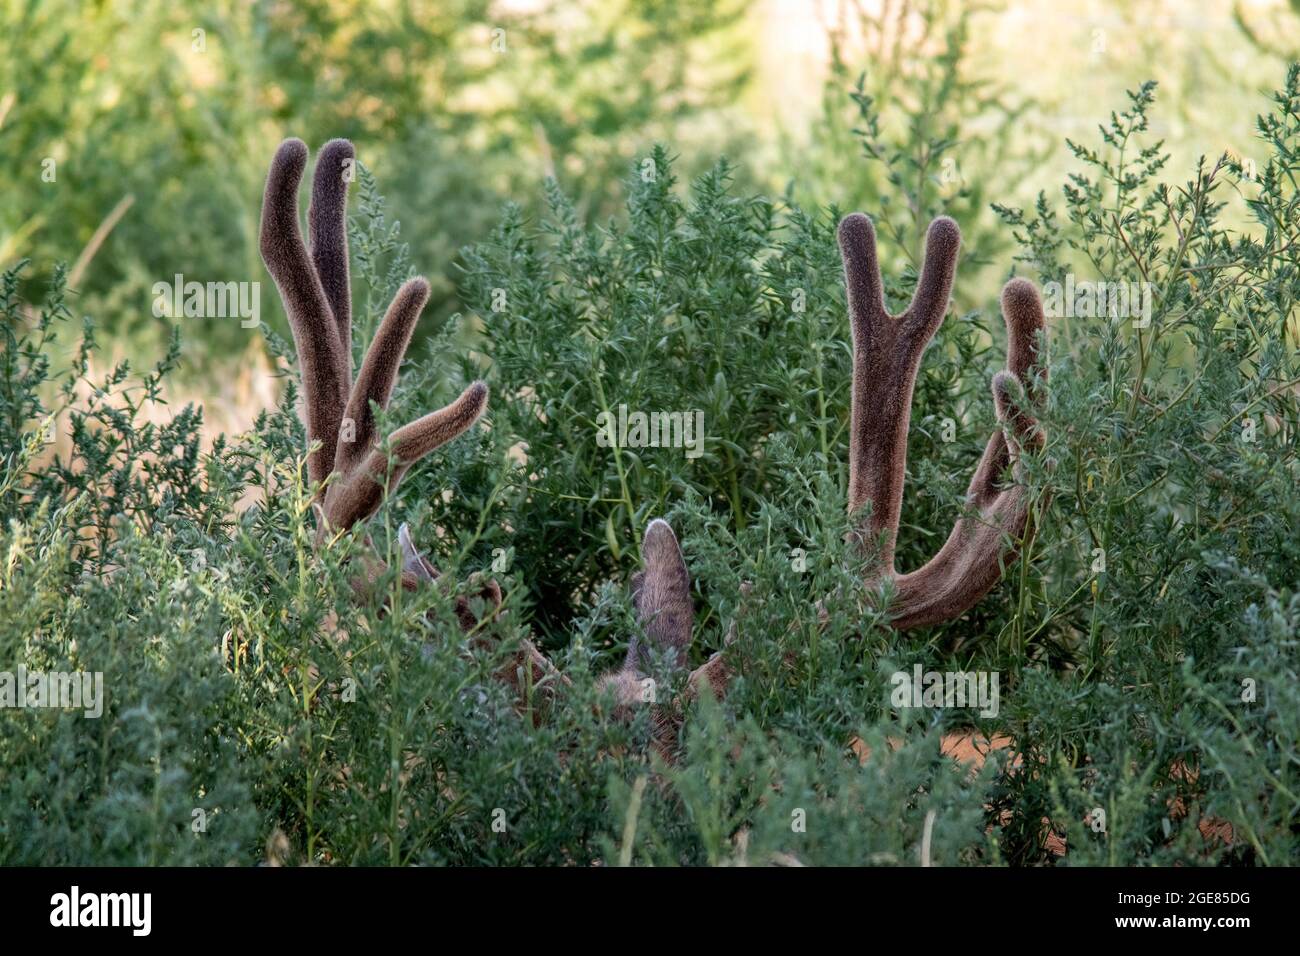 Le buck de cerf mulet (Odocoileus hemionus) est descendu avec les bois juste en montre - Rocky Mountain Arsenal National Wildlife refuge, Commerce City, près de DENV Banque D'Images